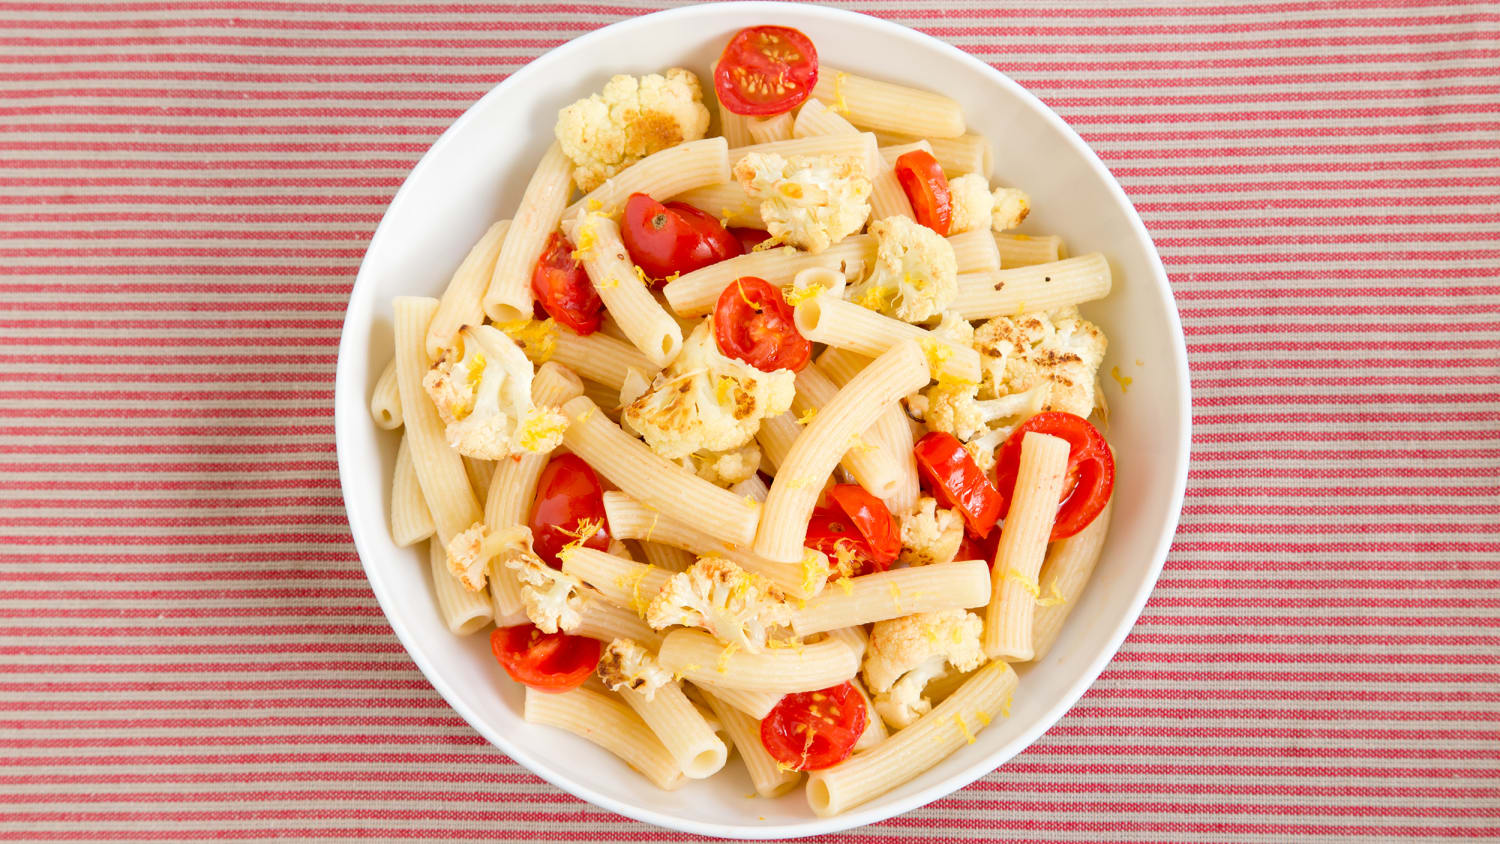 This 20-minute pasta recipe features crispy cauliflower